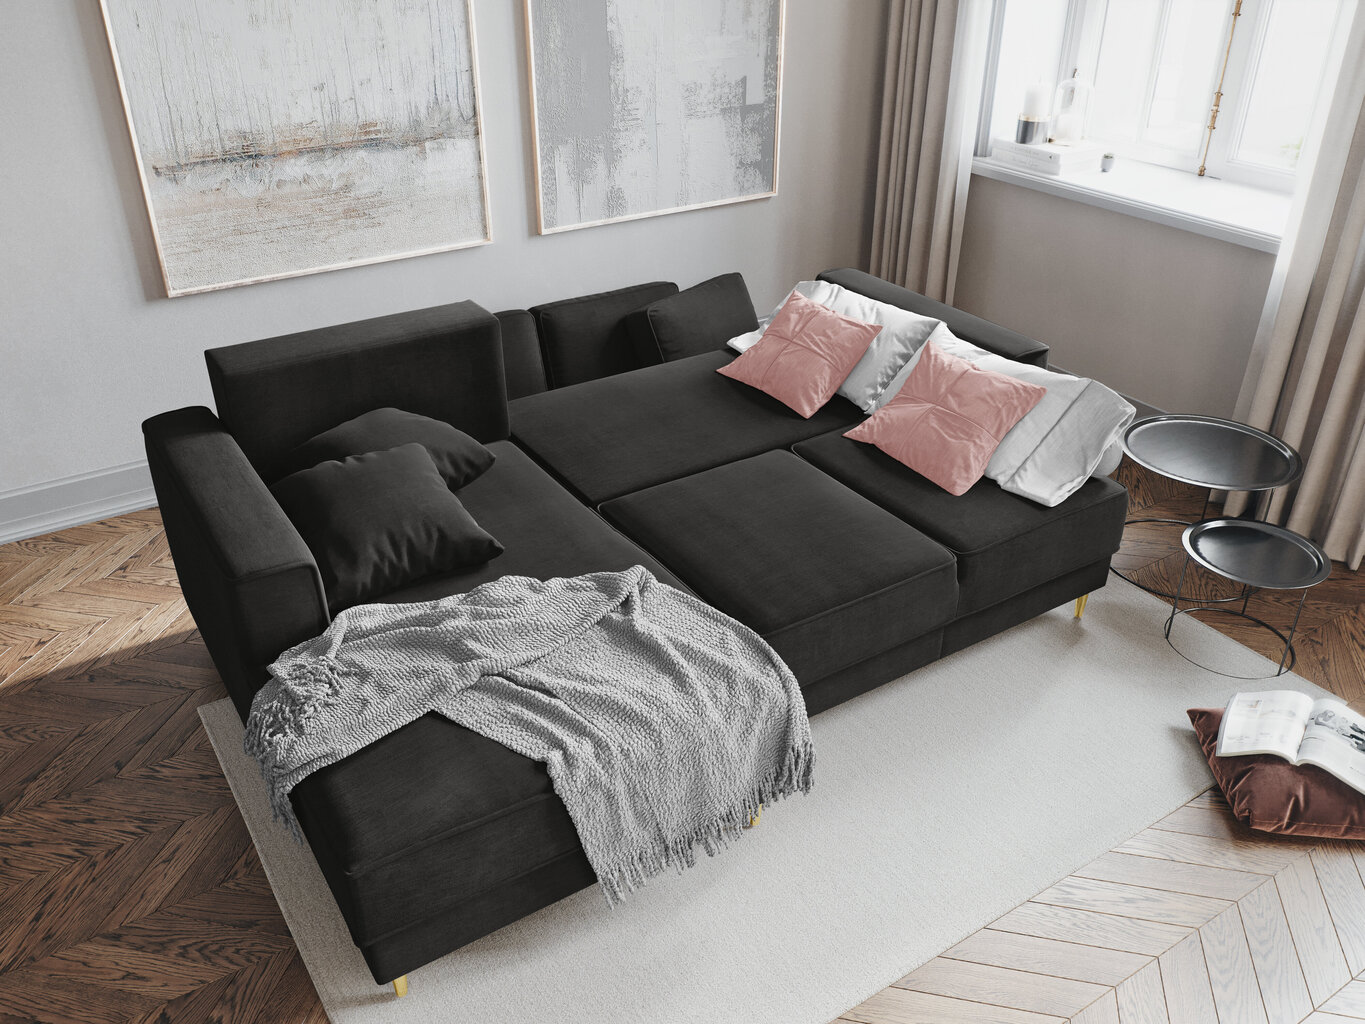 Stūra dīvāns Cosmopolitan Design Fano, melnas/zeltainas krāsas cena un informācija | Stūra dīvāni | 220.lv